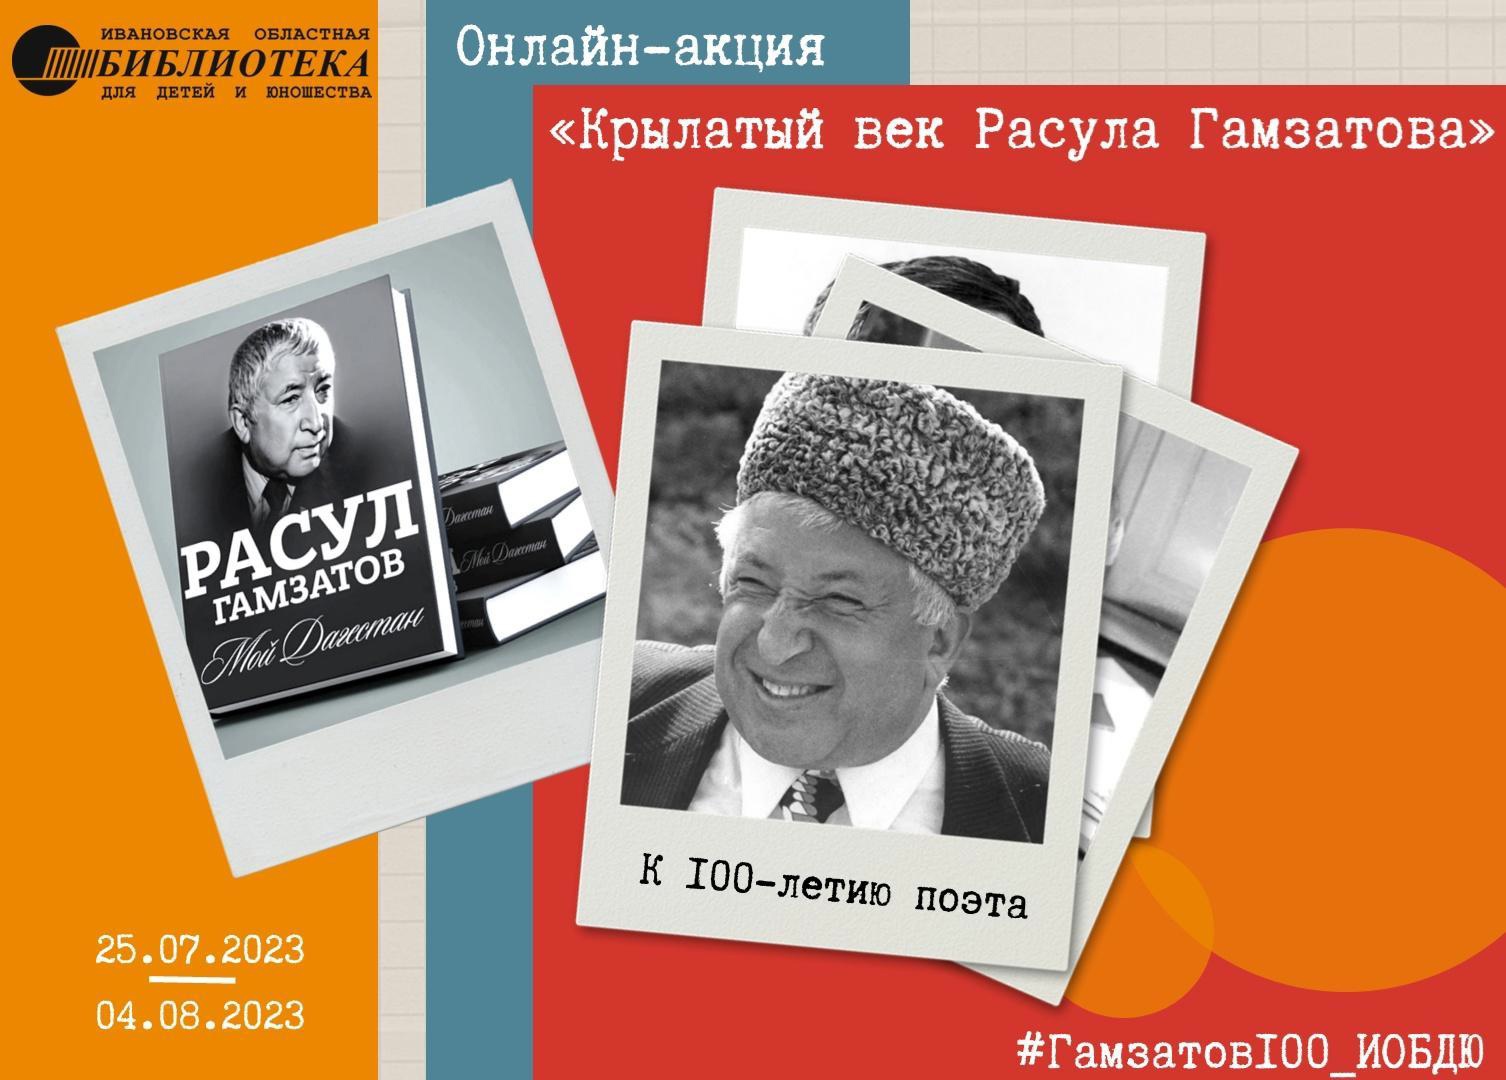 Жителей Ивановской области приглашают поучаствовать в онлайн-акции "Крылатый век Расула Гамзатова" 